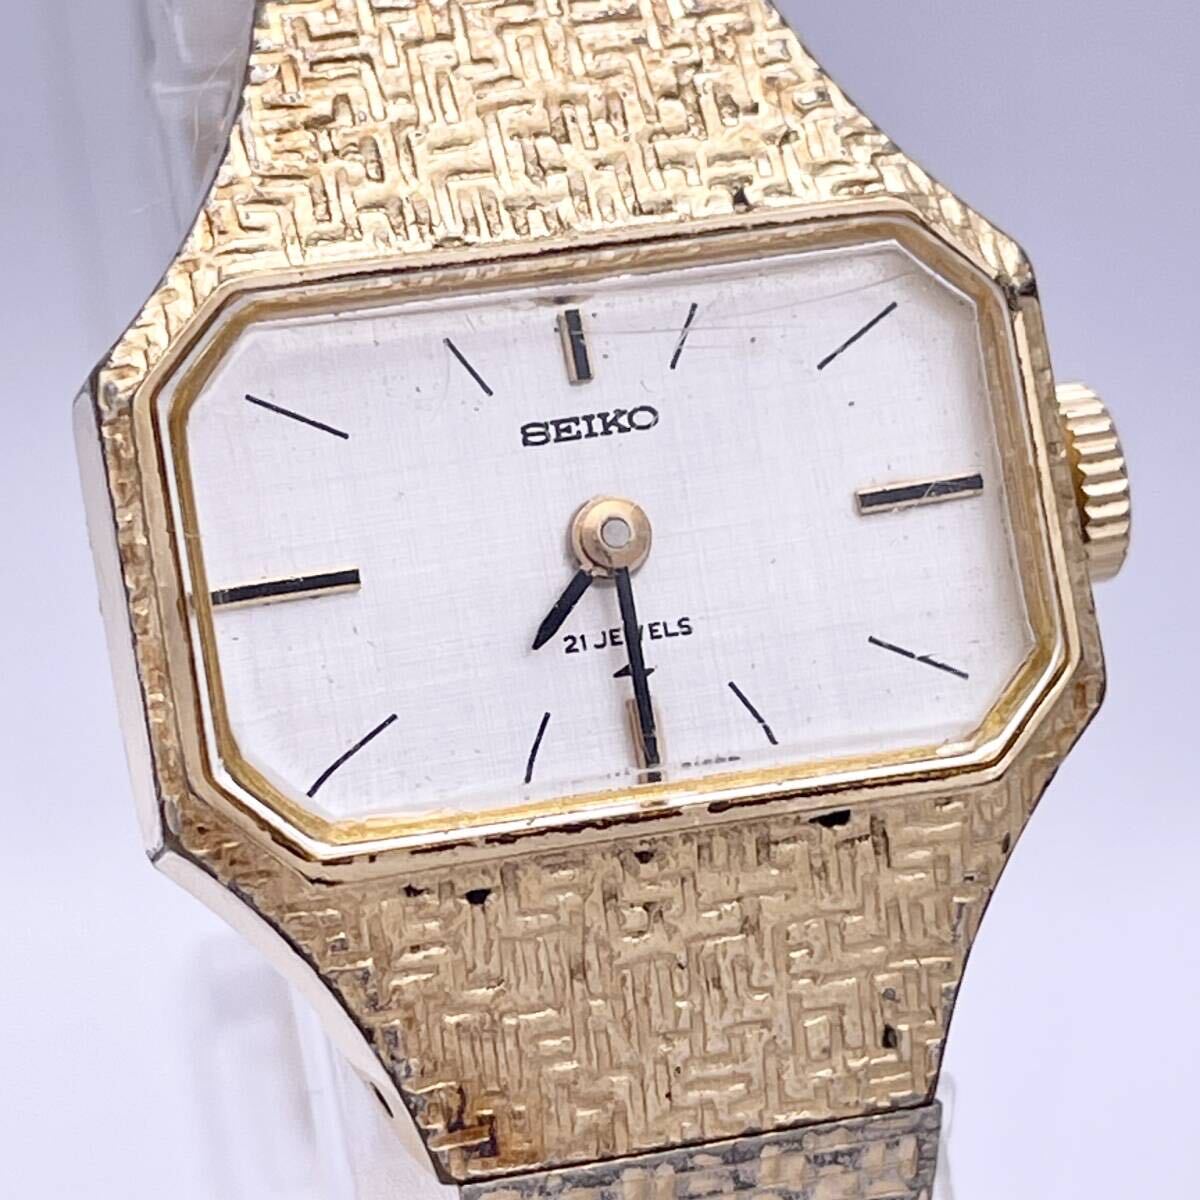 SEIKO セイコー 21jewels 21石 11-3870 腕時計 ウォッチ 手巻き 機械式 金 ゴールド P250_画像4